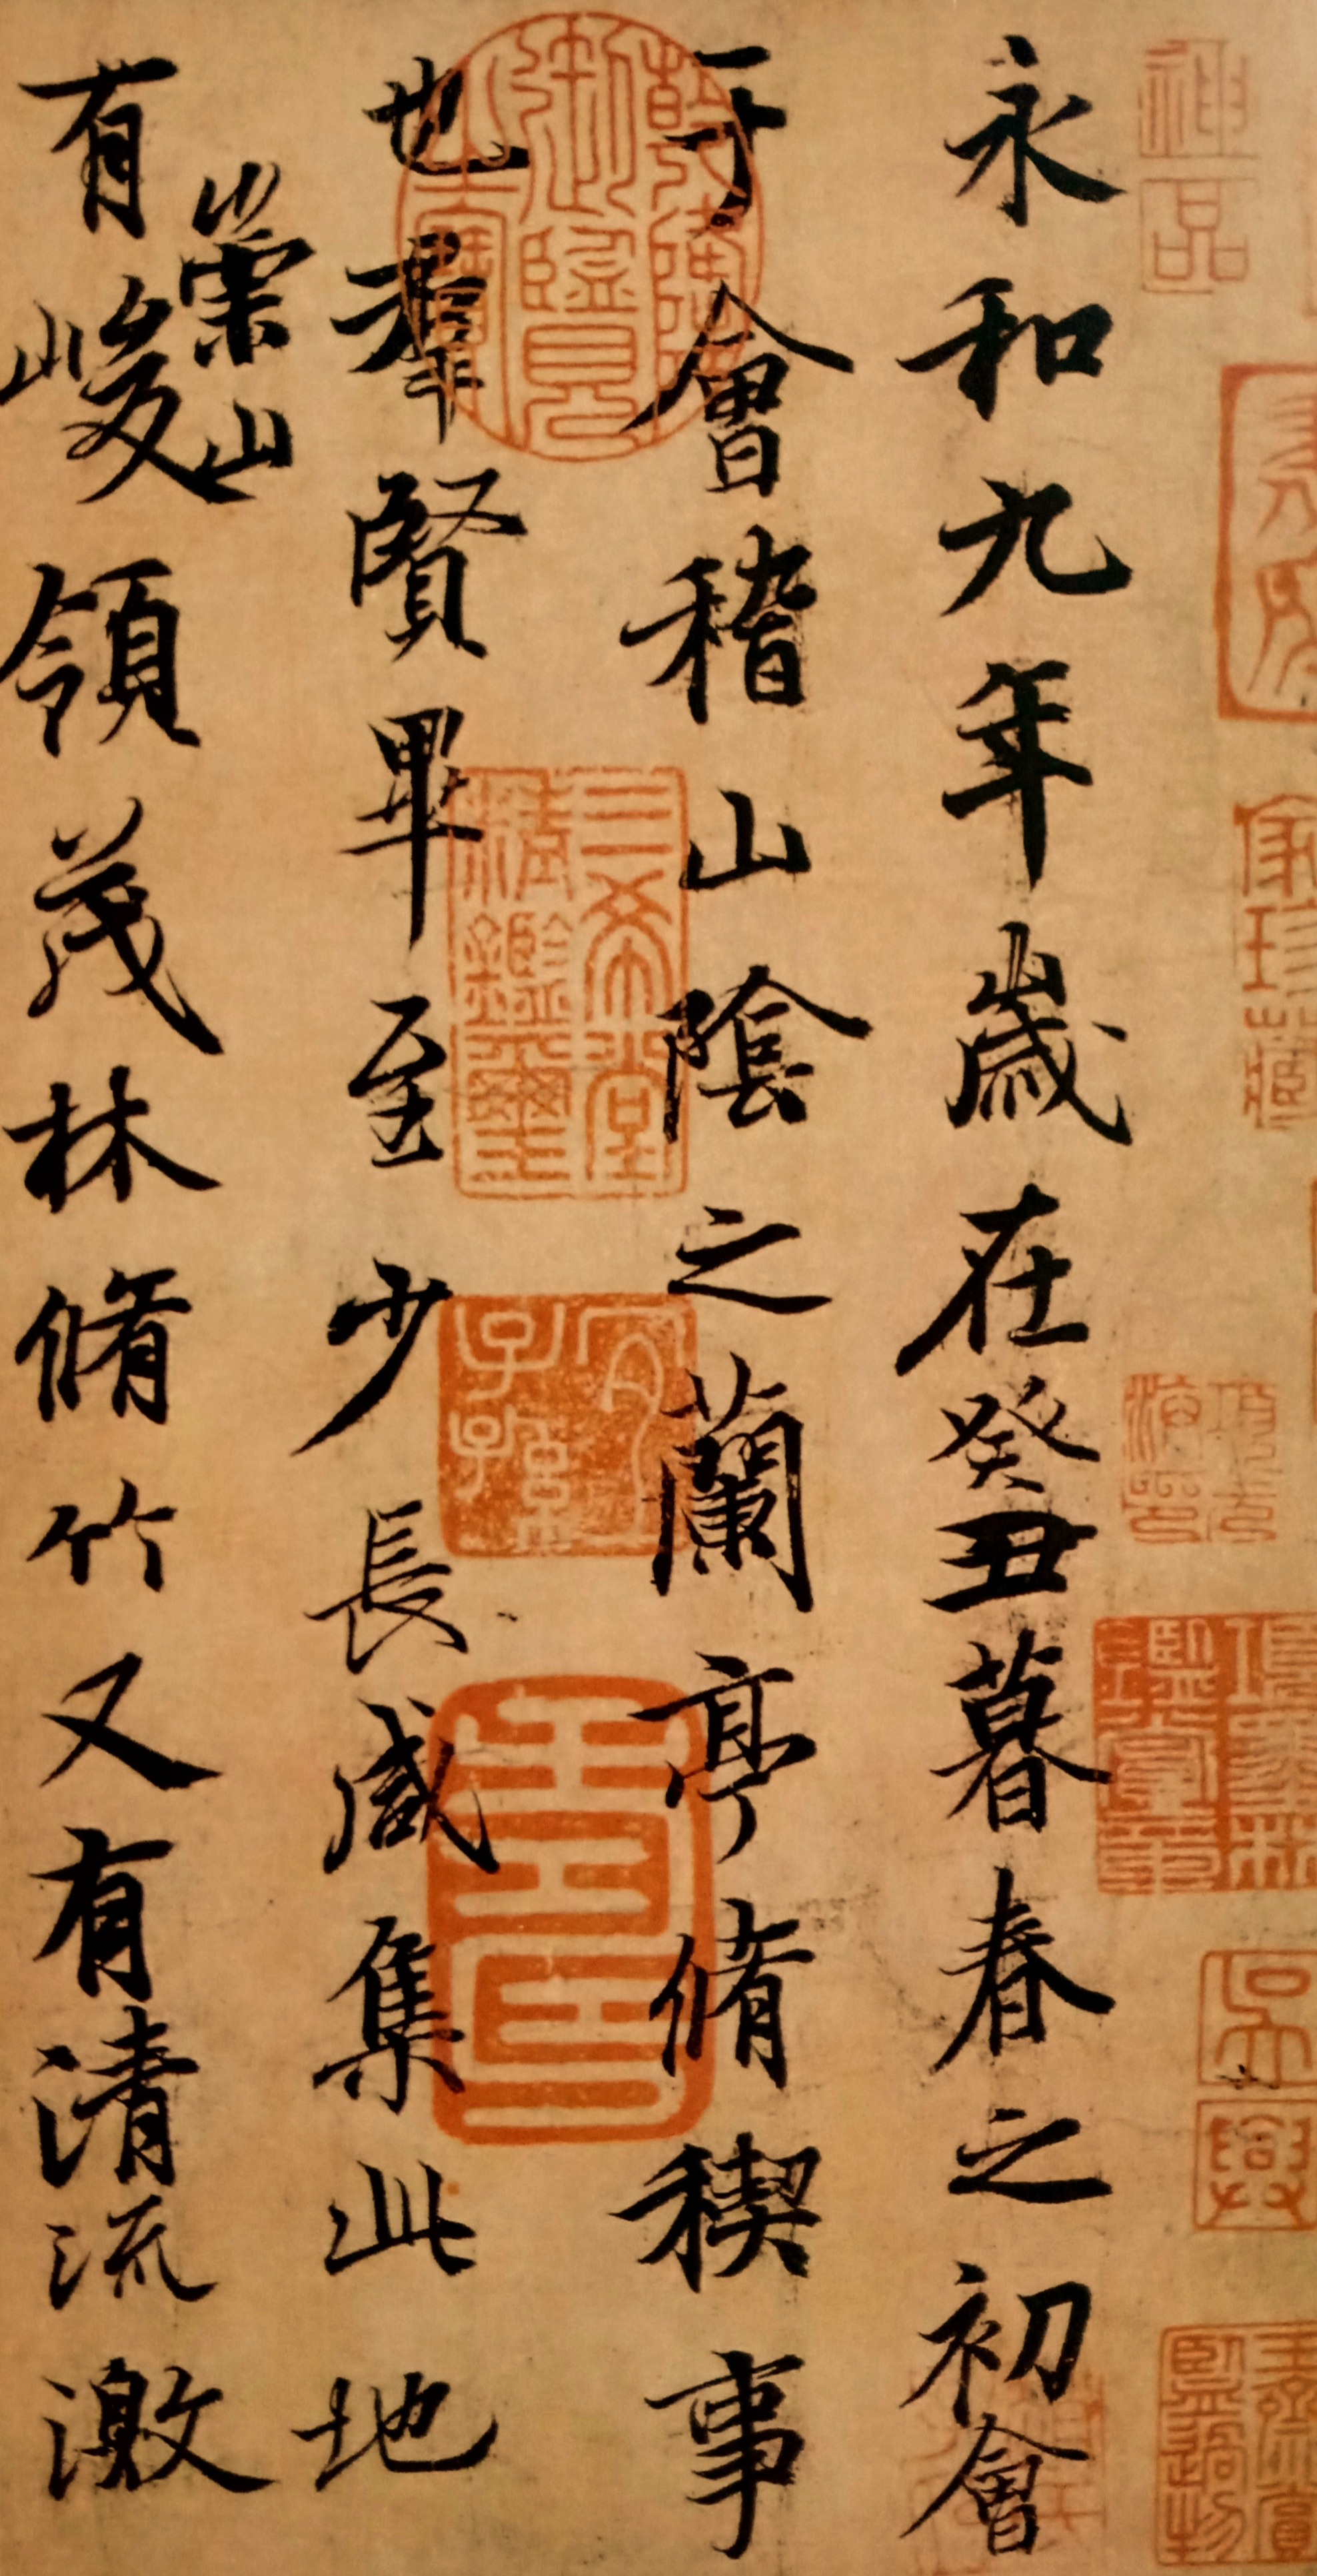 浅议王羲之行书作品《兰亭序》中存在的楷书笔画与楷意字体